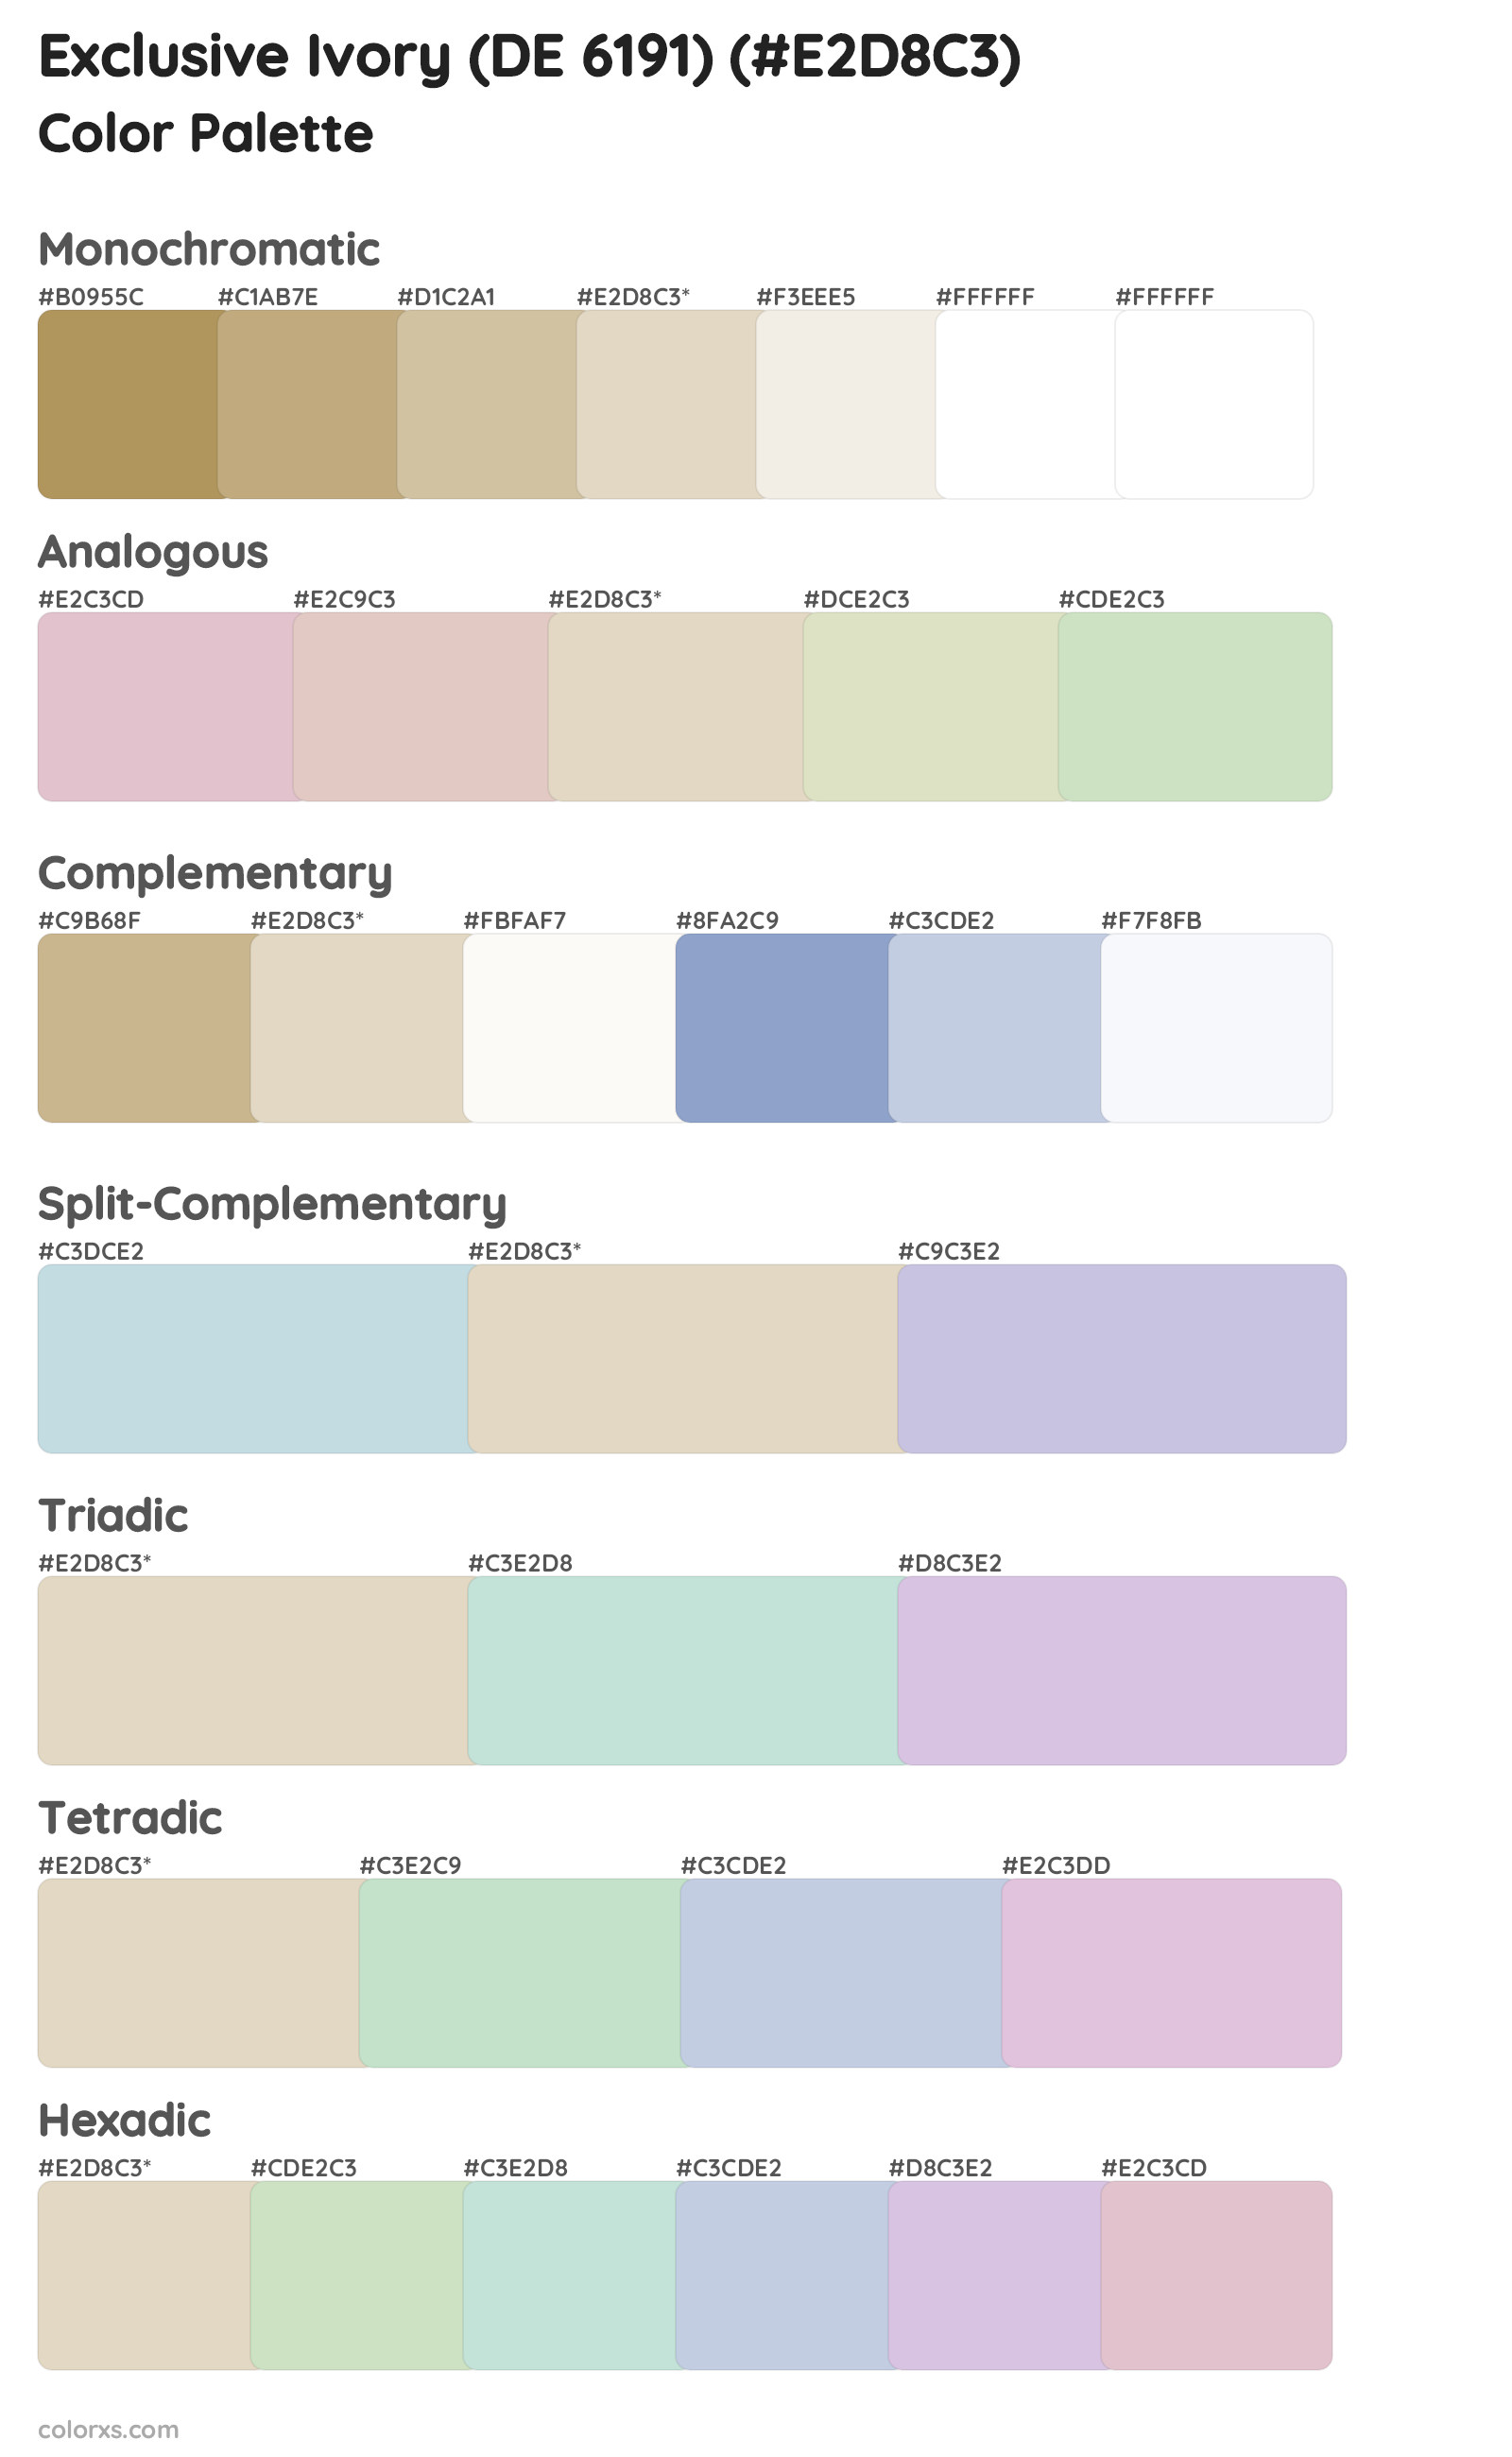 Exclusive Ivory (DE 6191) Color Scheme Palettes